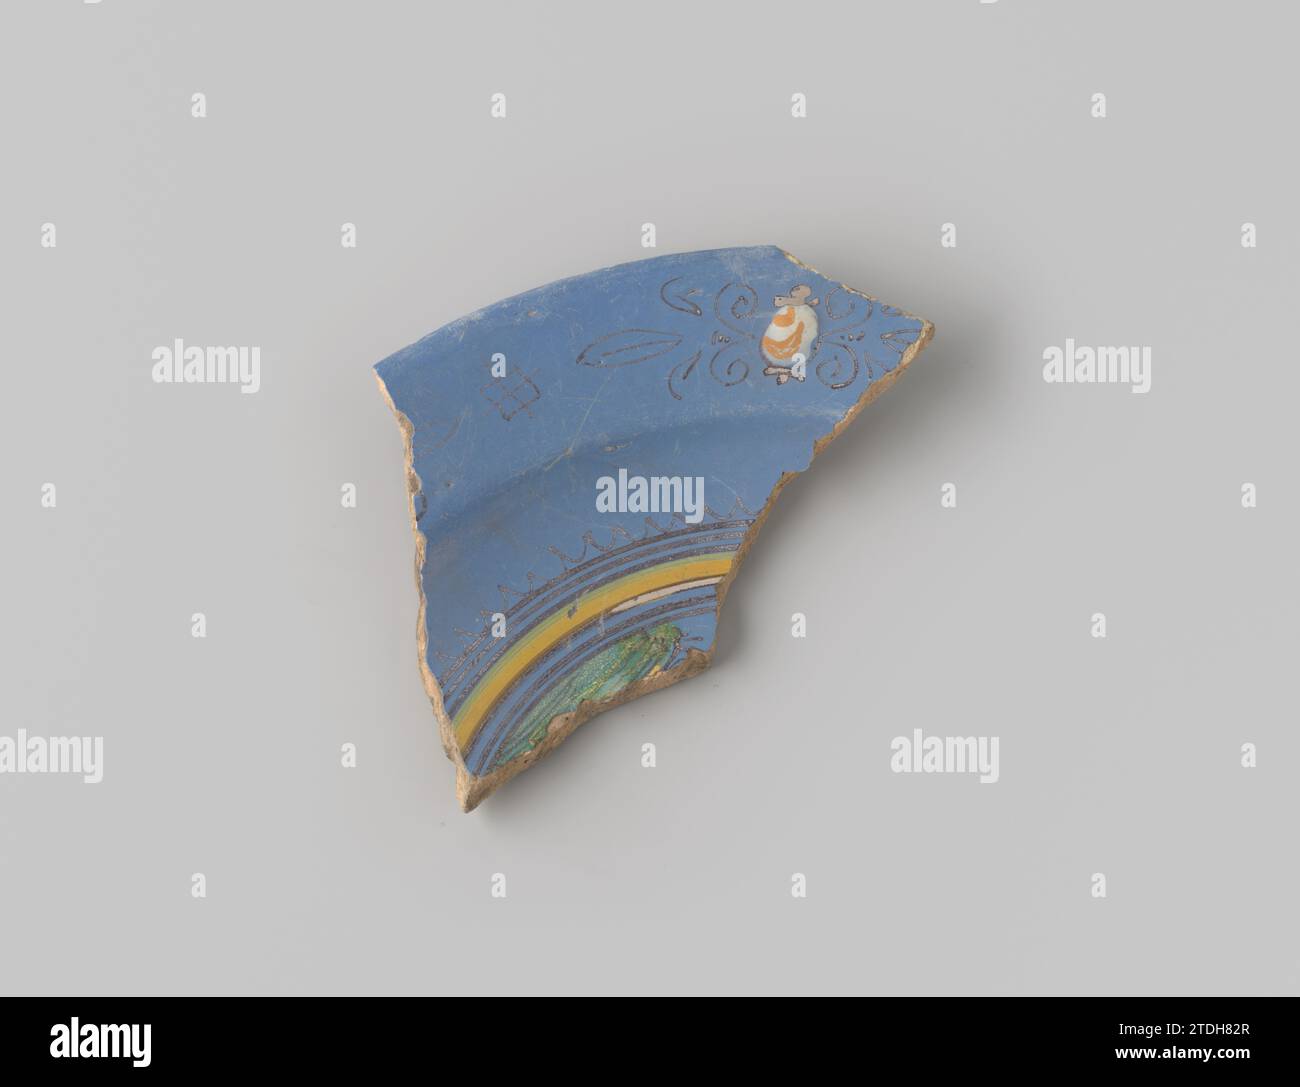 Sharf of ross - faïence de cuisson, avec glaçage bleu au sommet, décorée d'une peinture d'une fenêtre, de formes de fleurs stylisées et d'une partie d'un cercle en jaune, brun, orange et blanc, anonyme, 1600 - 1650 faïence des pays-Bas du Nord. Faïence majolique du nord des pays-Bas glacés. glaçage majolique Banque D'Images